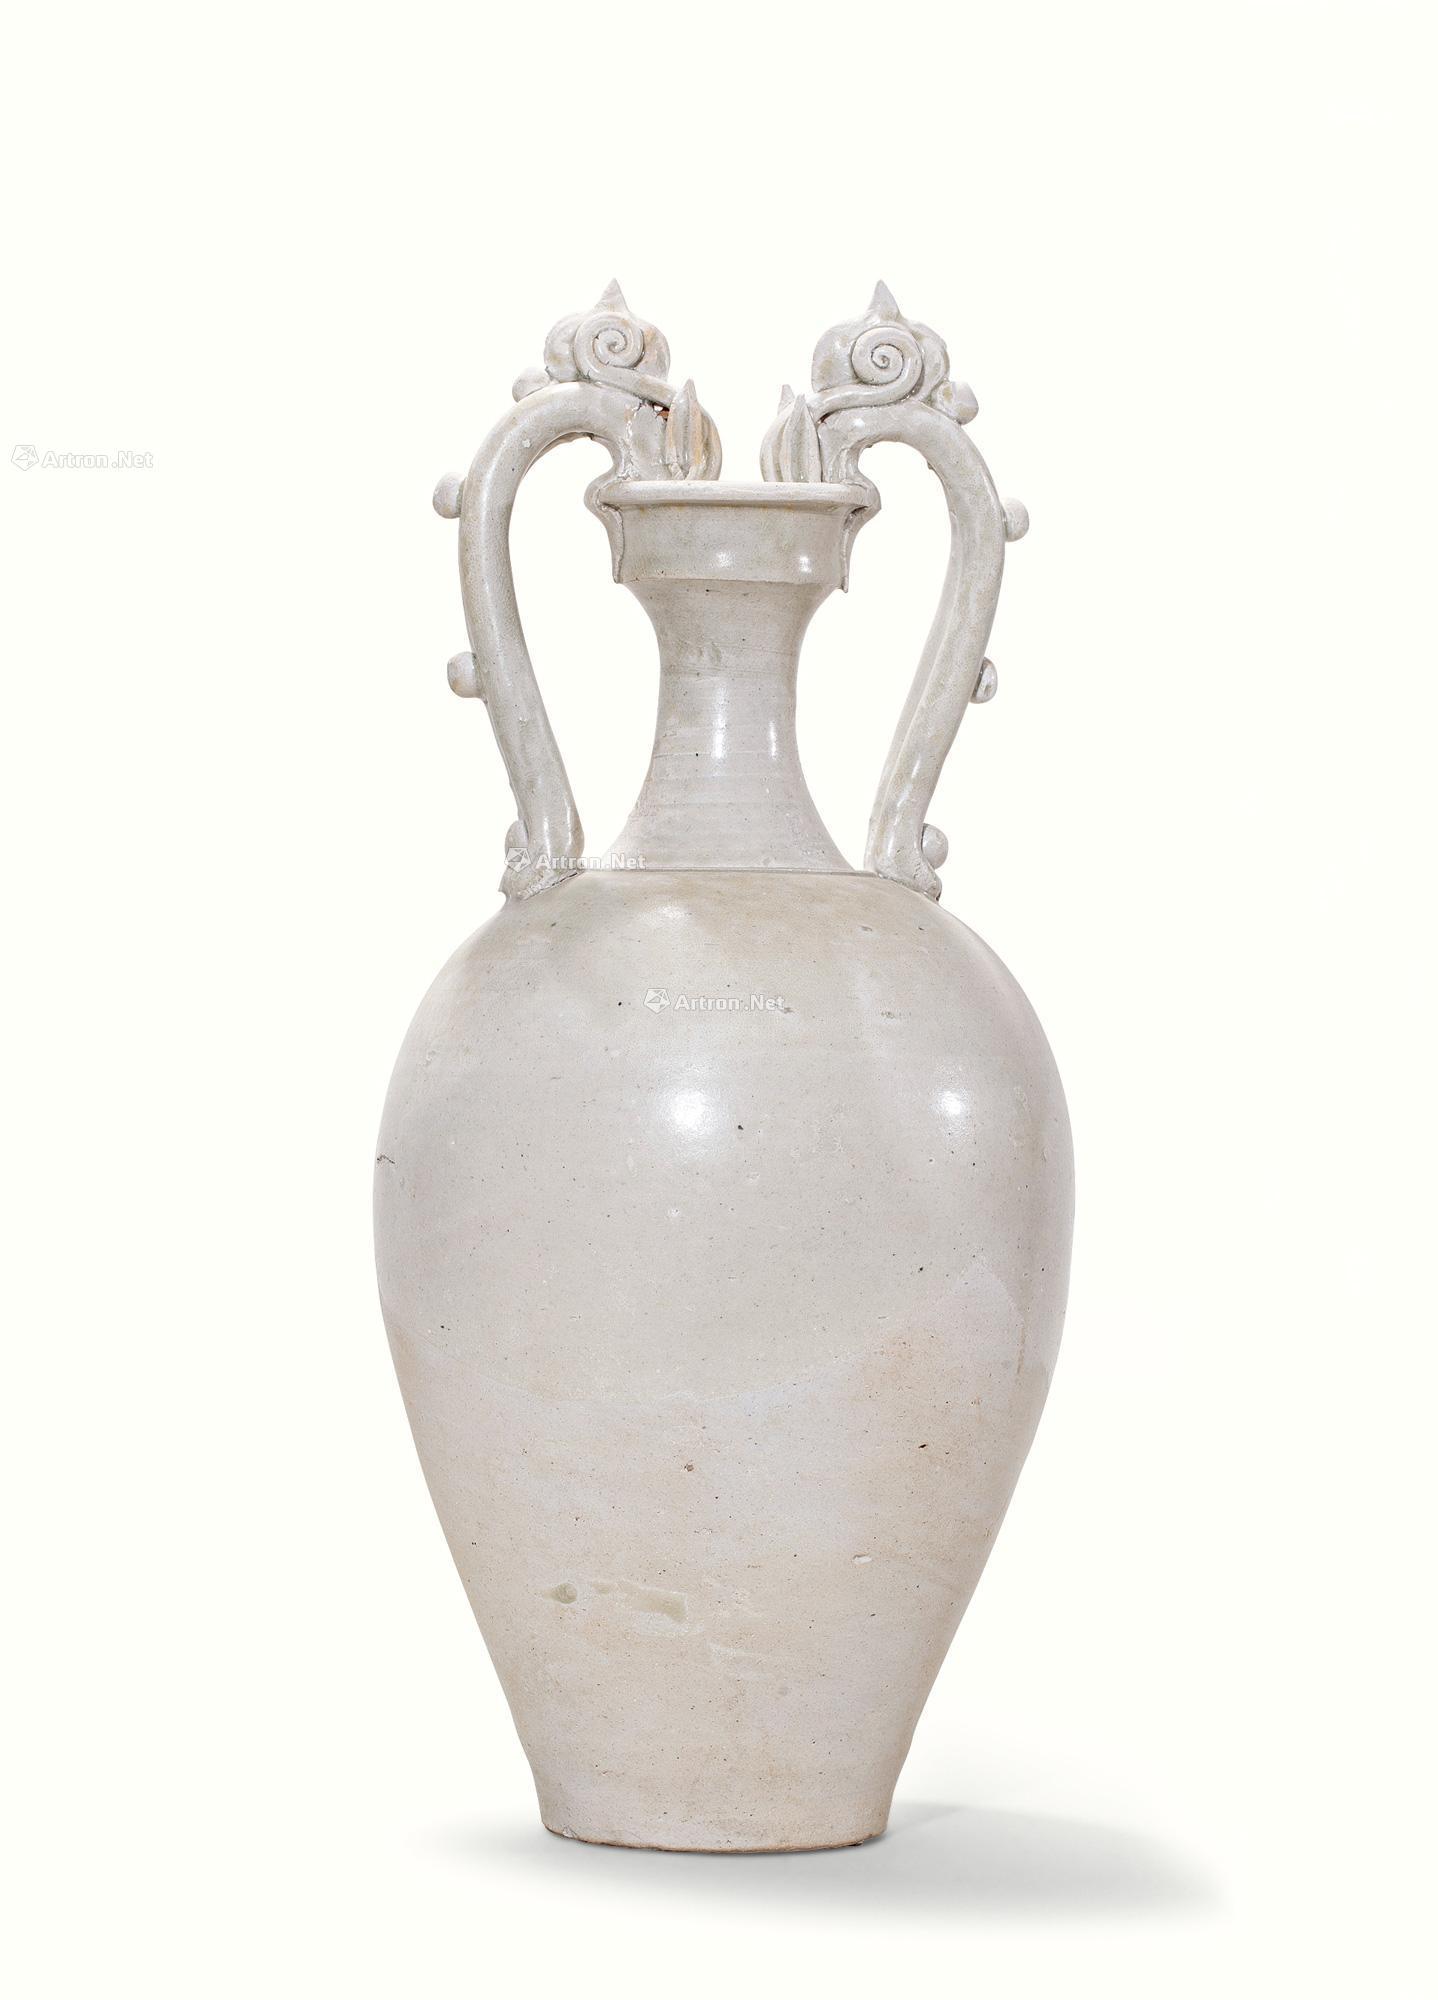 1632 隋 北方青白瓷双龙瓶